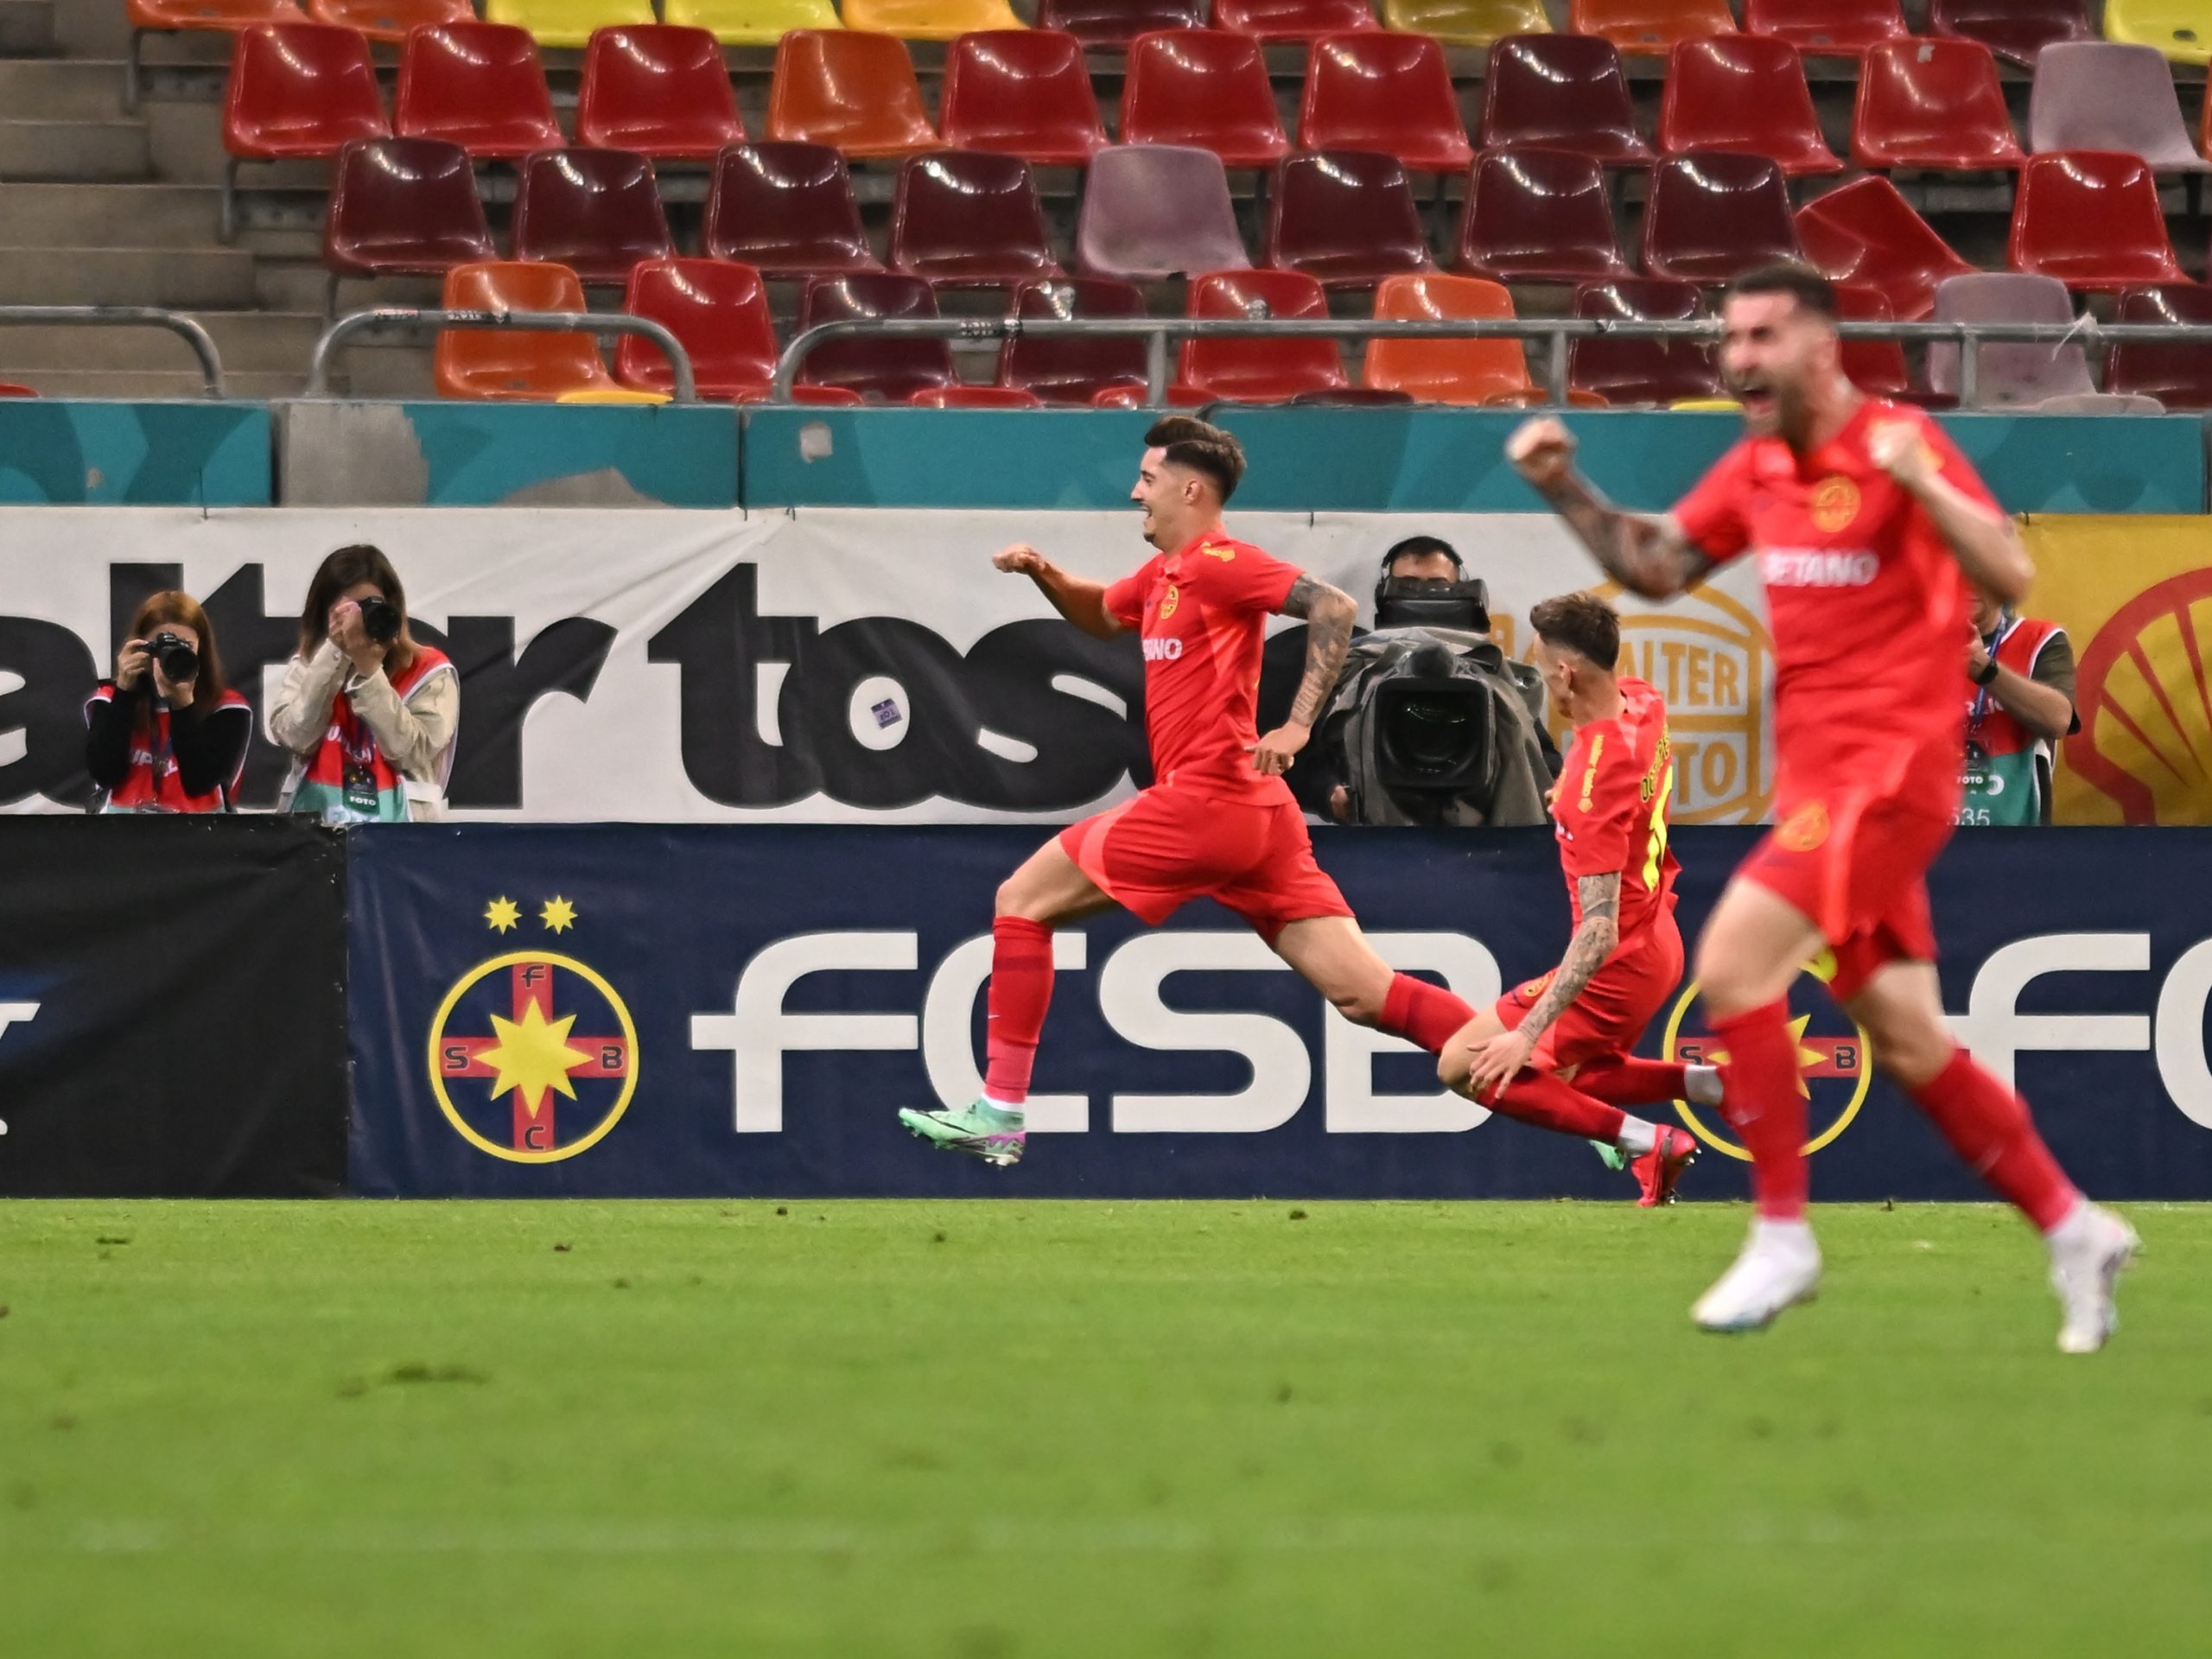 Bucuria lui David Miculescu, după marcarea primului gol. Sursa: sportpictures.eu